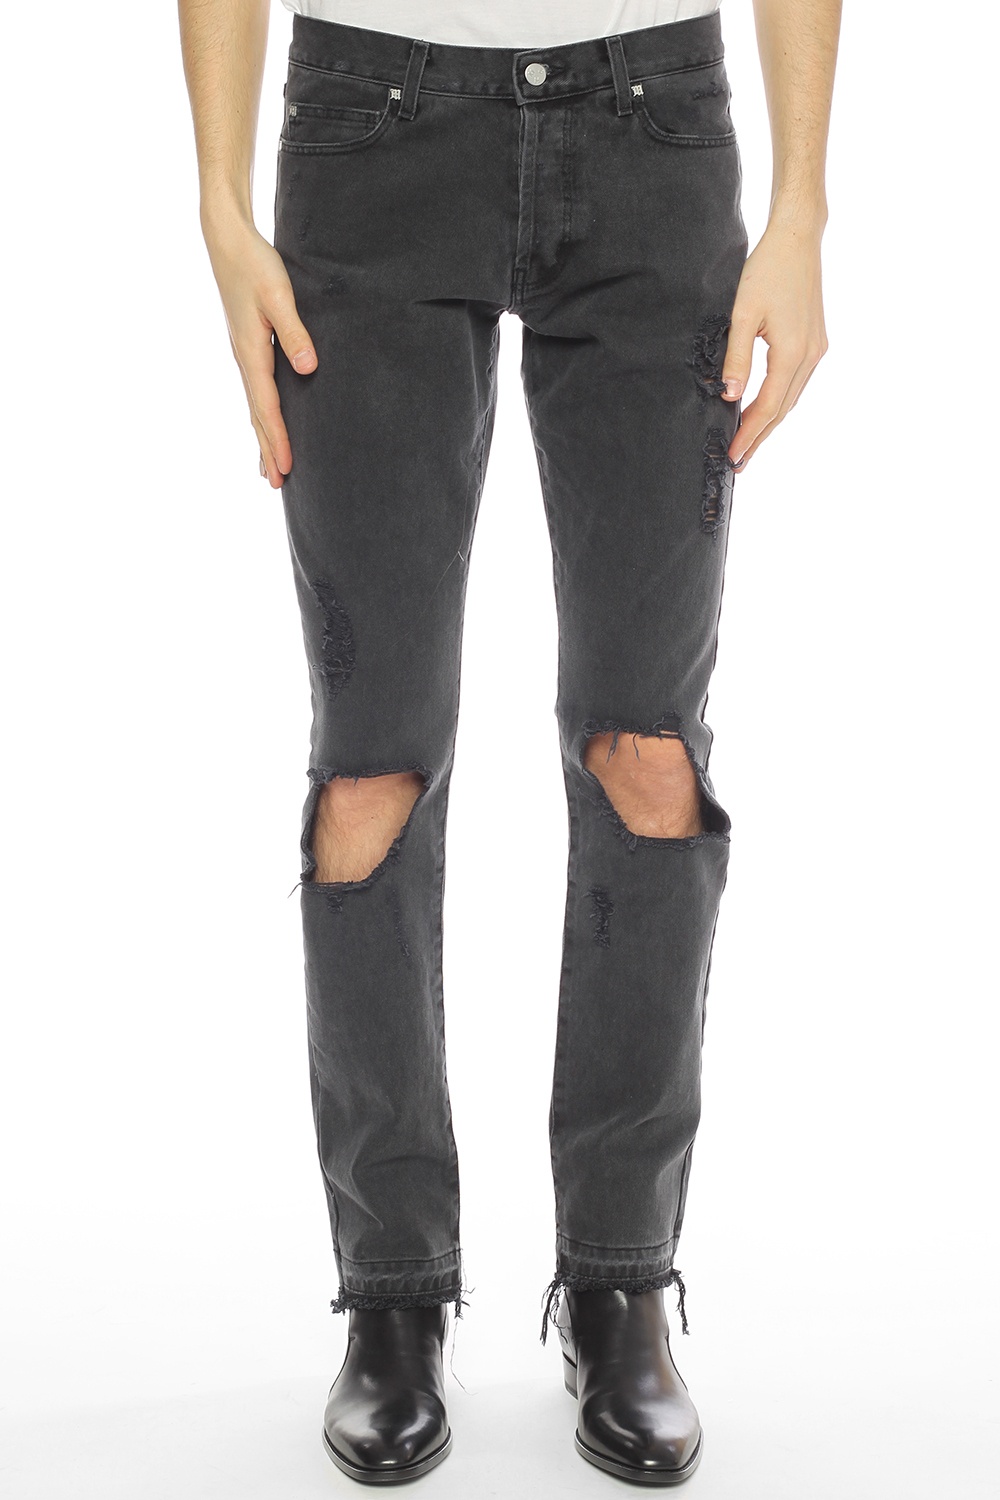 MISBHV: jeans for man - Black  Misbhv jeans 122M302 online at